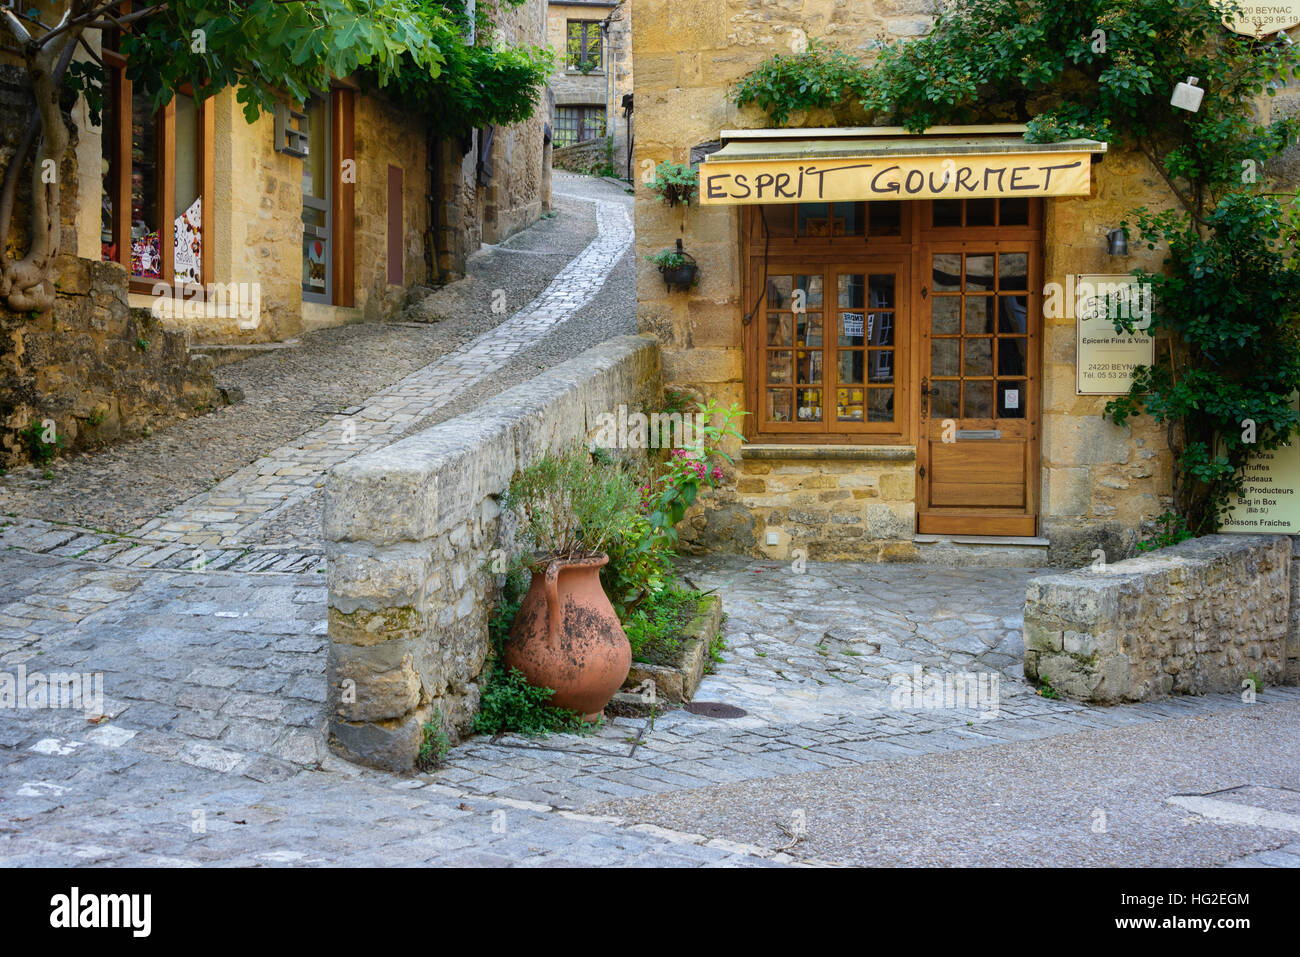 Typische französische Stadtbild mit einem Gourmet-Shop vorne und Kopfsteinpflaster Straßen in der traditionellen Stadt Beynac-et-Cazenac, Frankreich. Stockfoto